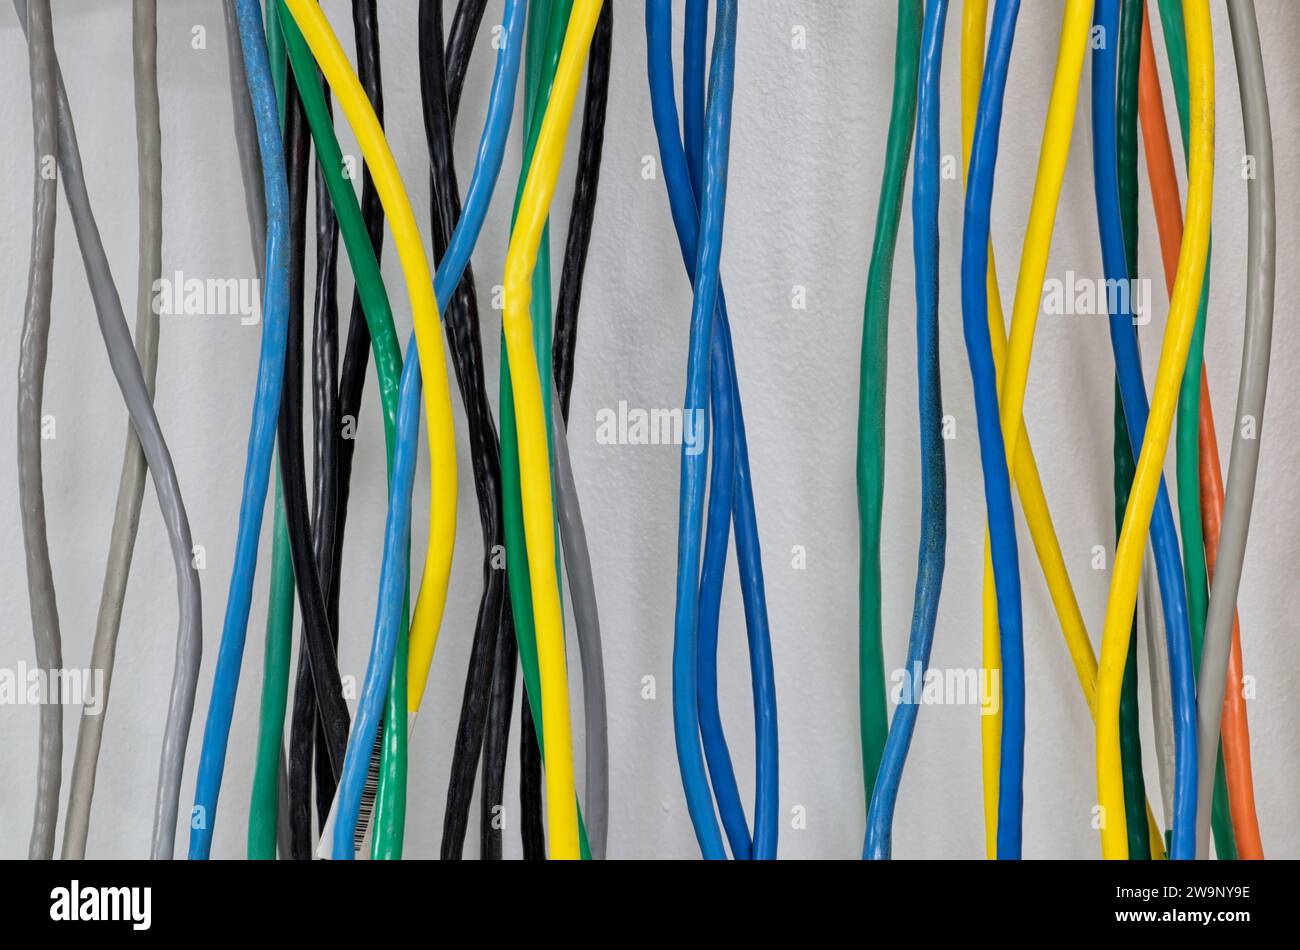 Câbles électriques colorés accrochés à un mur verticalement. Câbles à paires torsadées CAT5 pour réseaux informatiques. Banque D'Images